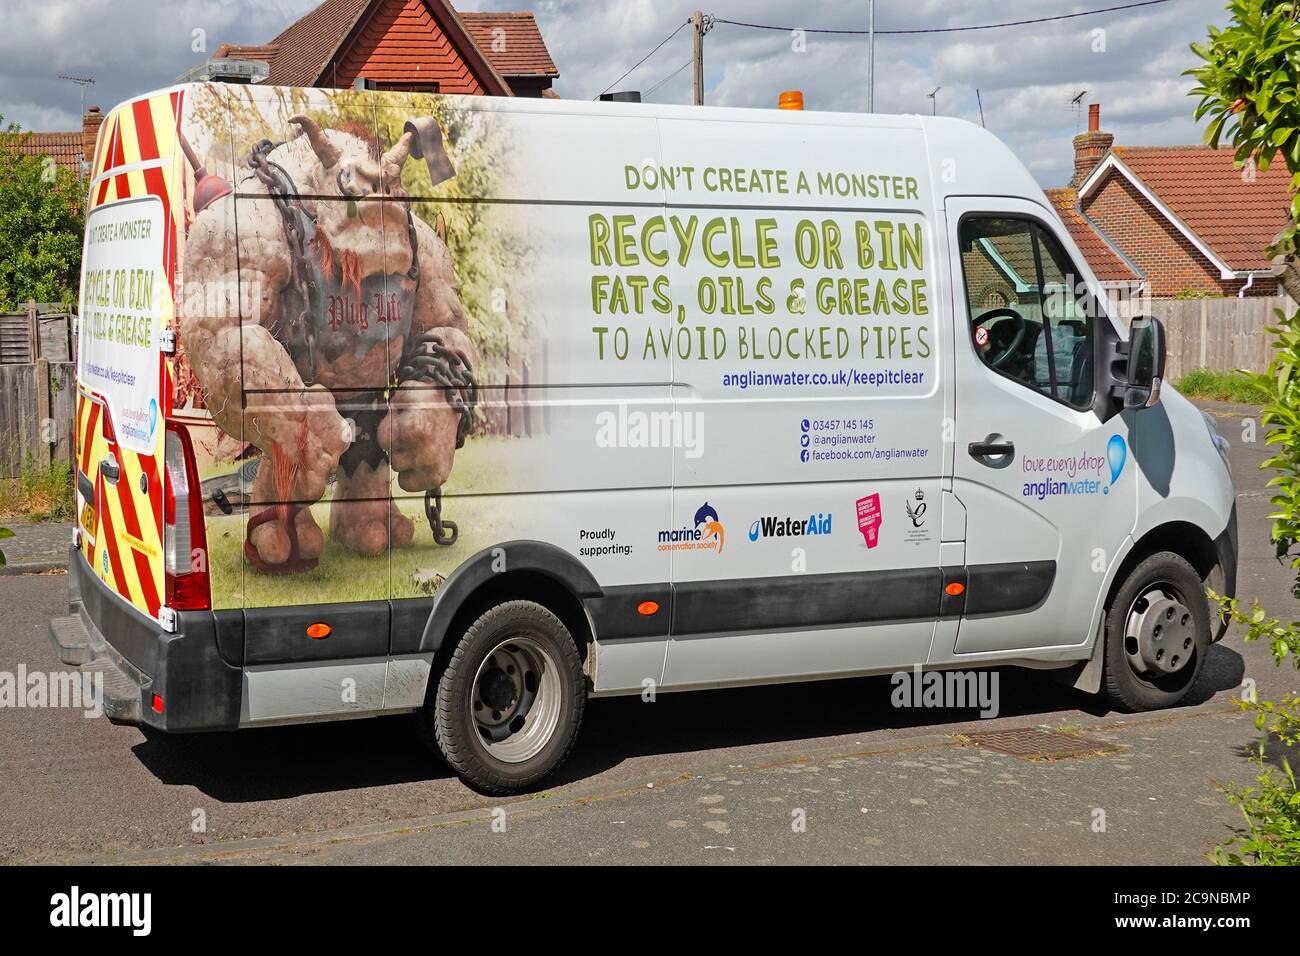 Anglian Water van fournissant un service de nettoyage des égouts à drain bloqué et une publicité éducative favorisant le recyclage des graisses huiles prévention des blocages Royaume-Uni Banque D'Images